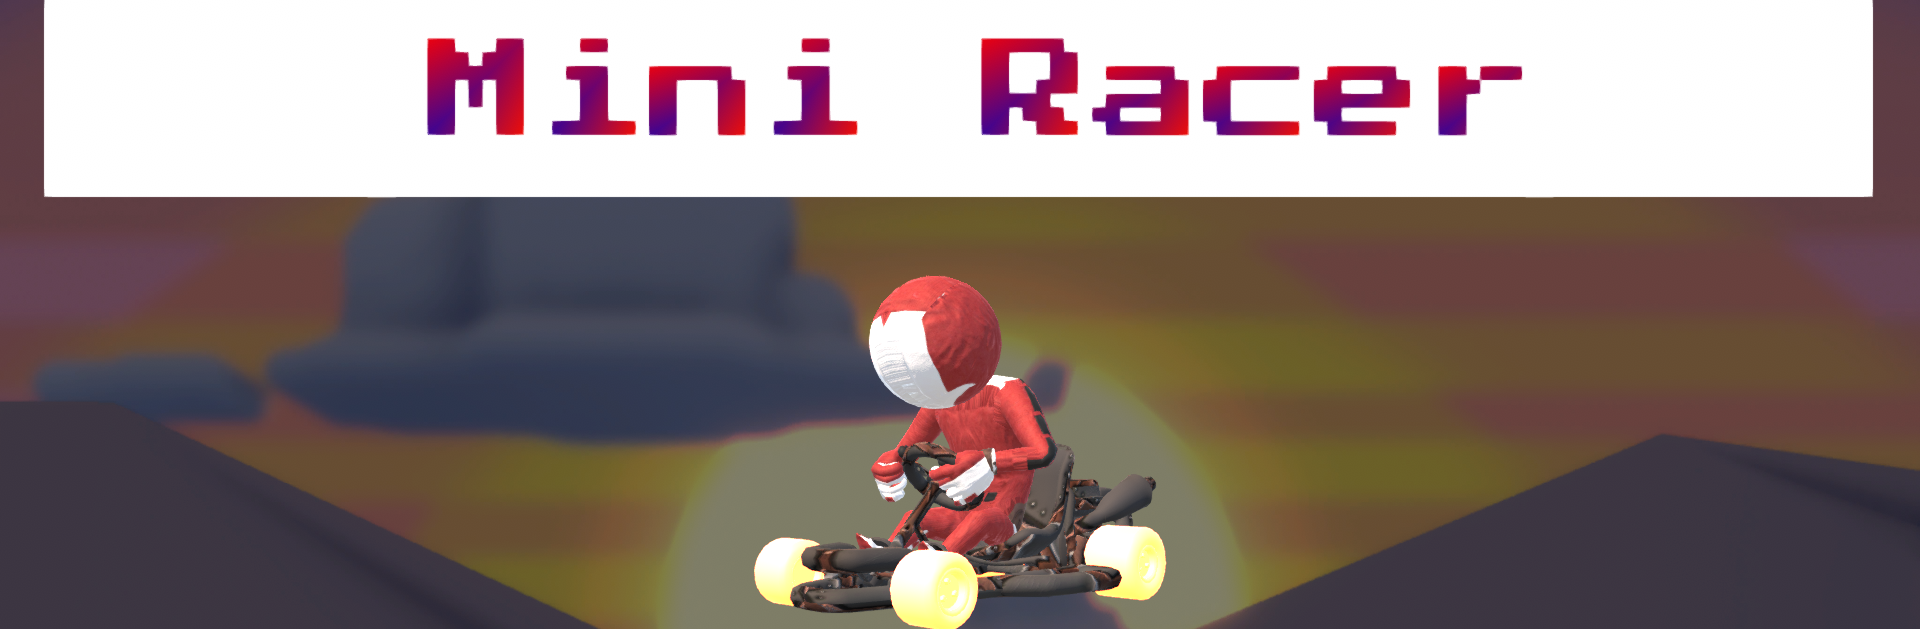 Mini racer